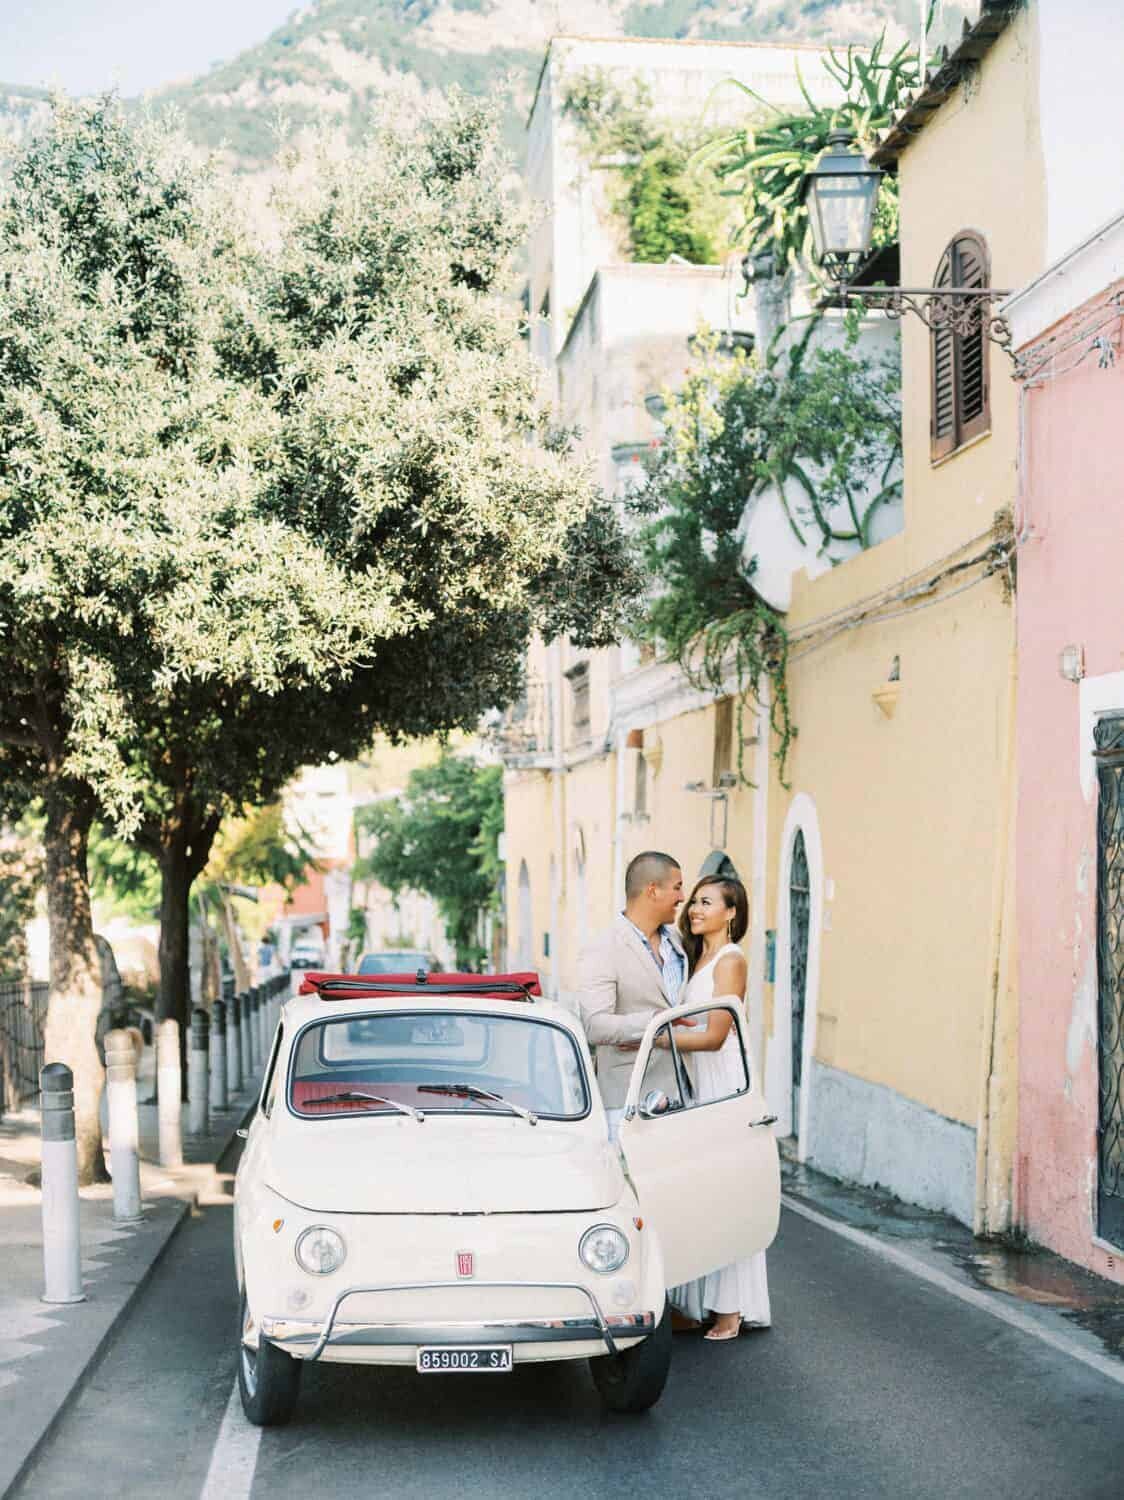 Positano-engagement-session-Amalfi-coast-Italy-by-Julia-Kaptelova_Photography-021